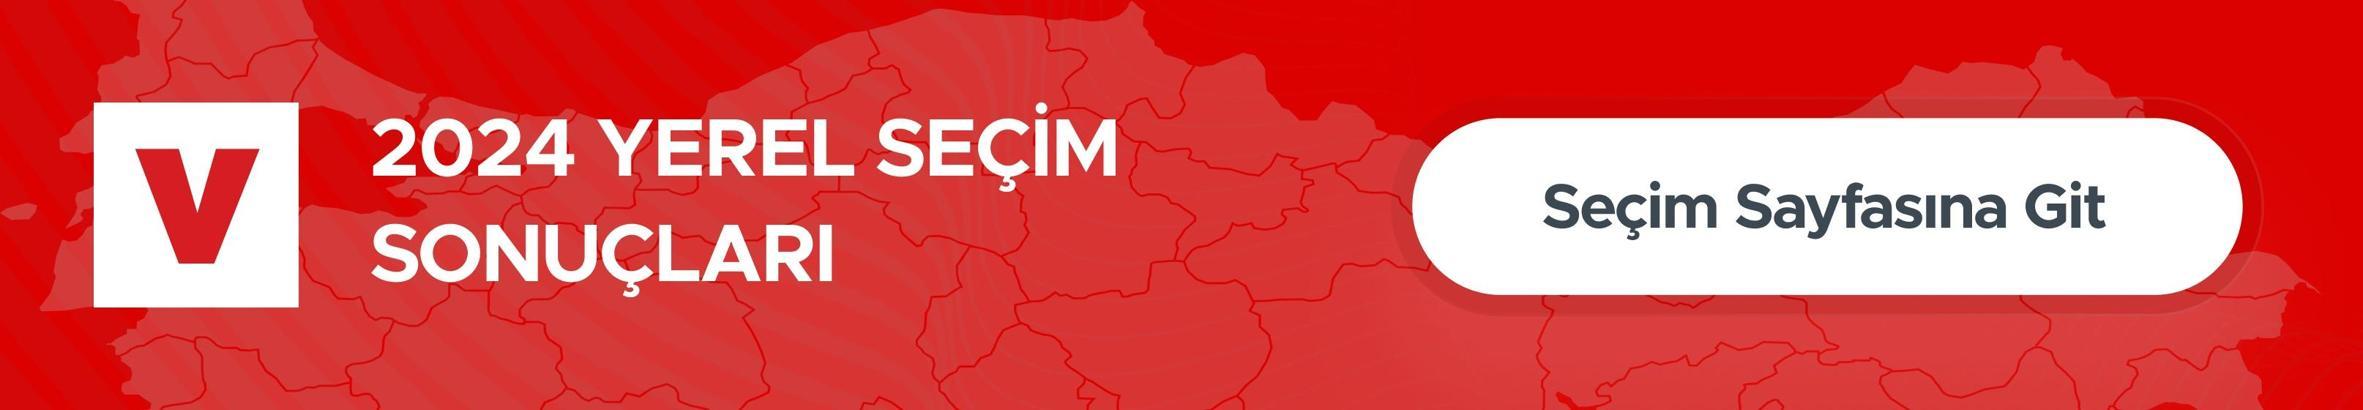 İstanbul ilçe seçim sonuçları 2024: Şile seçim sonuçlarına göre kim kazandı? Şile Belediyesi hangi partide?